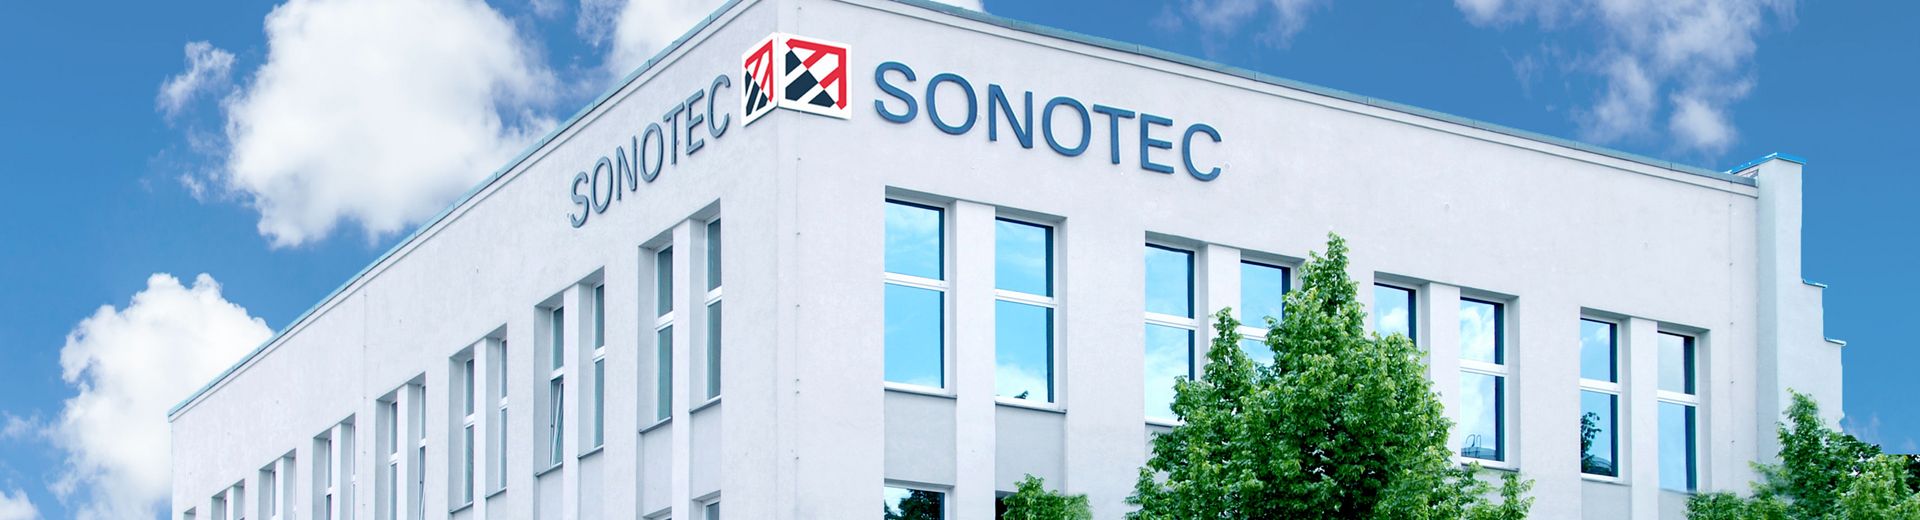 SONOTEC Headquarters Building